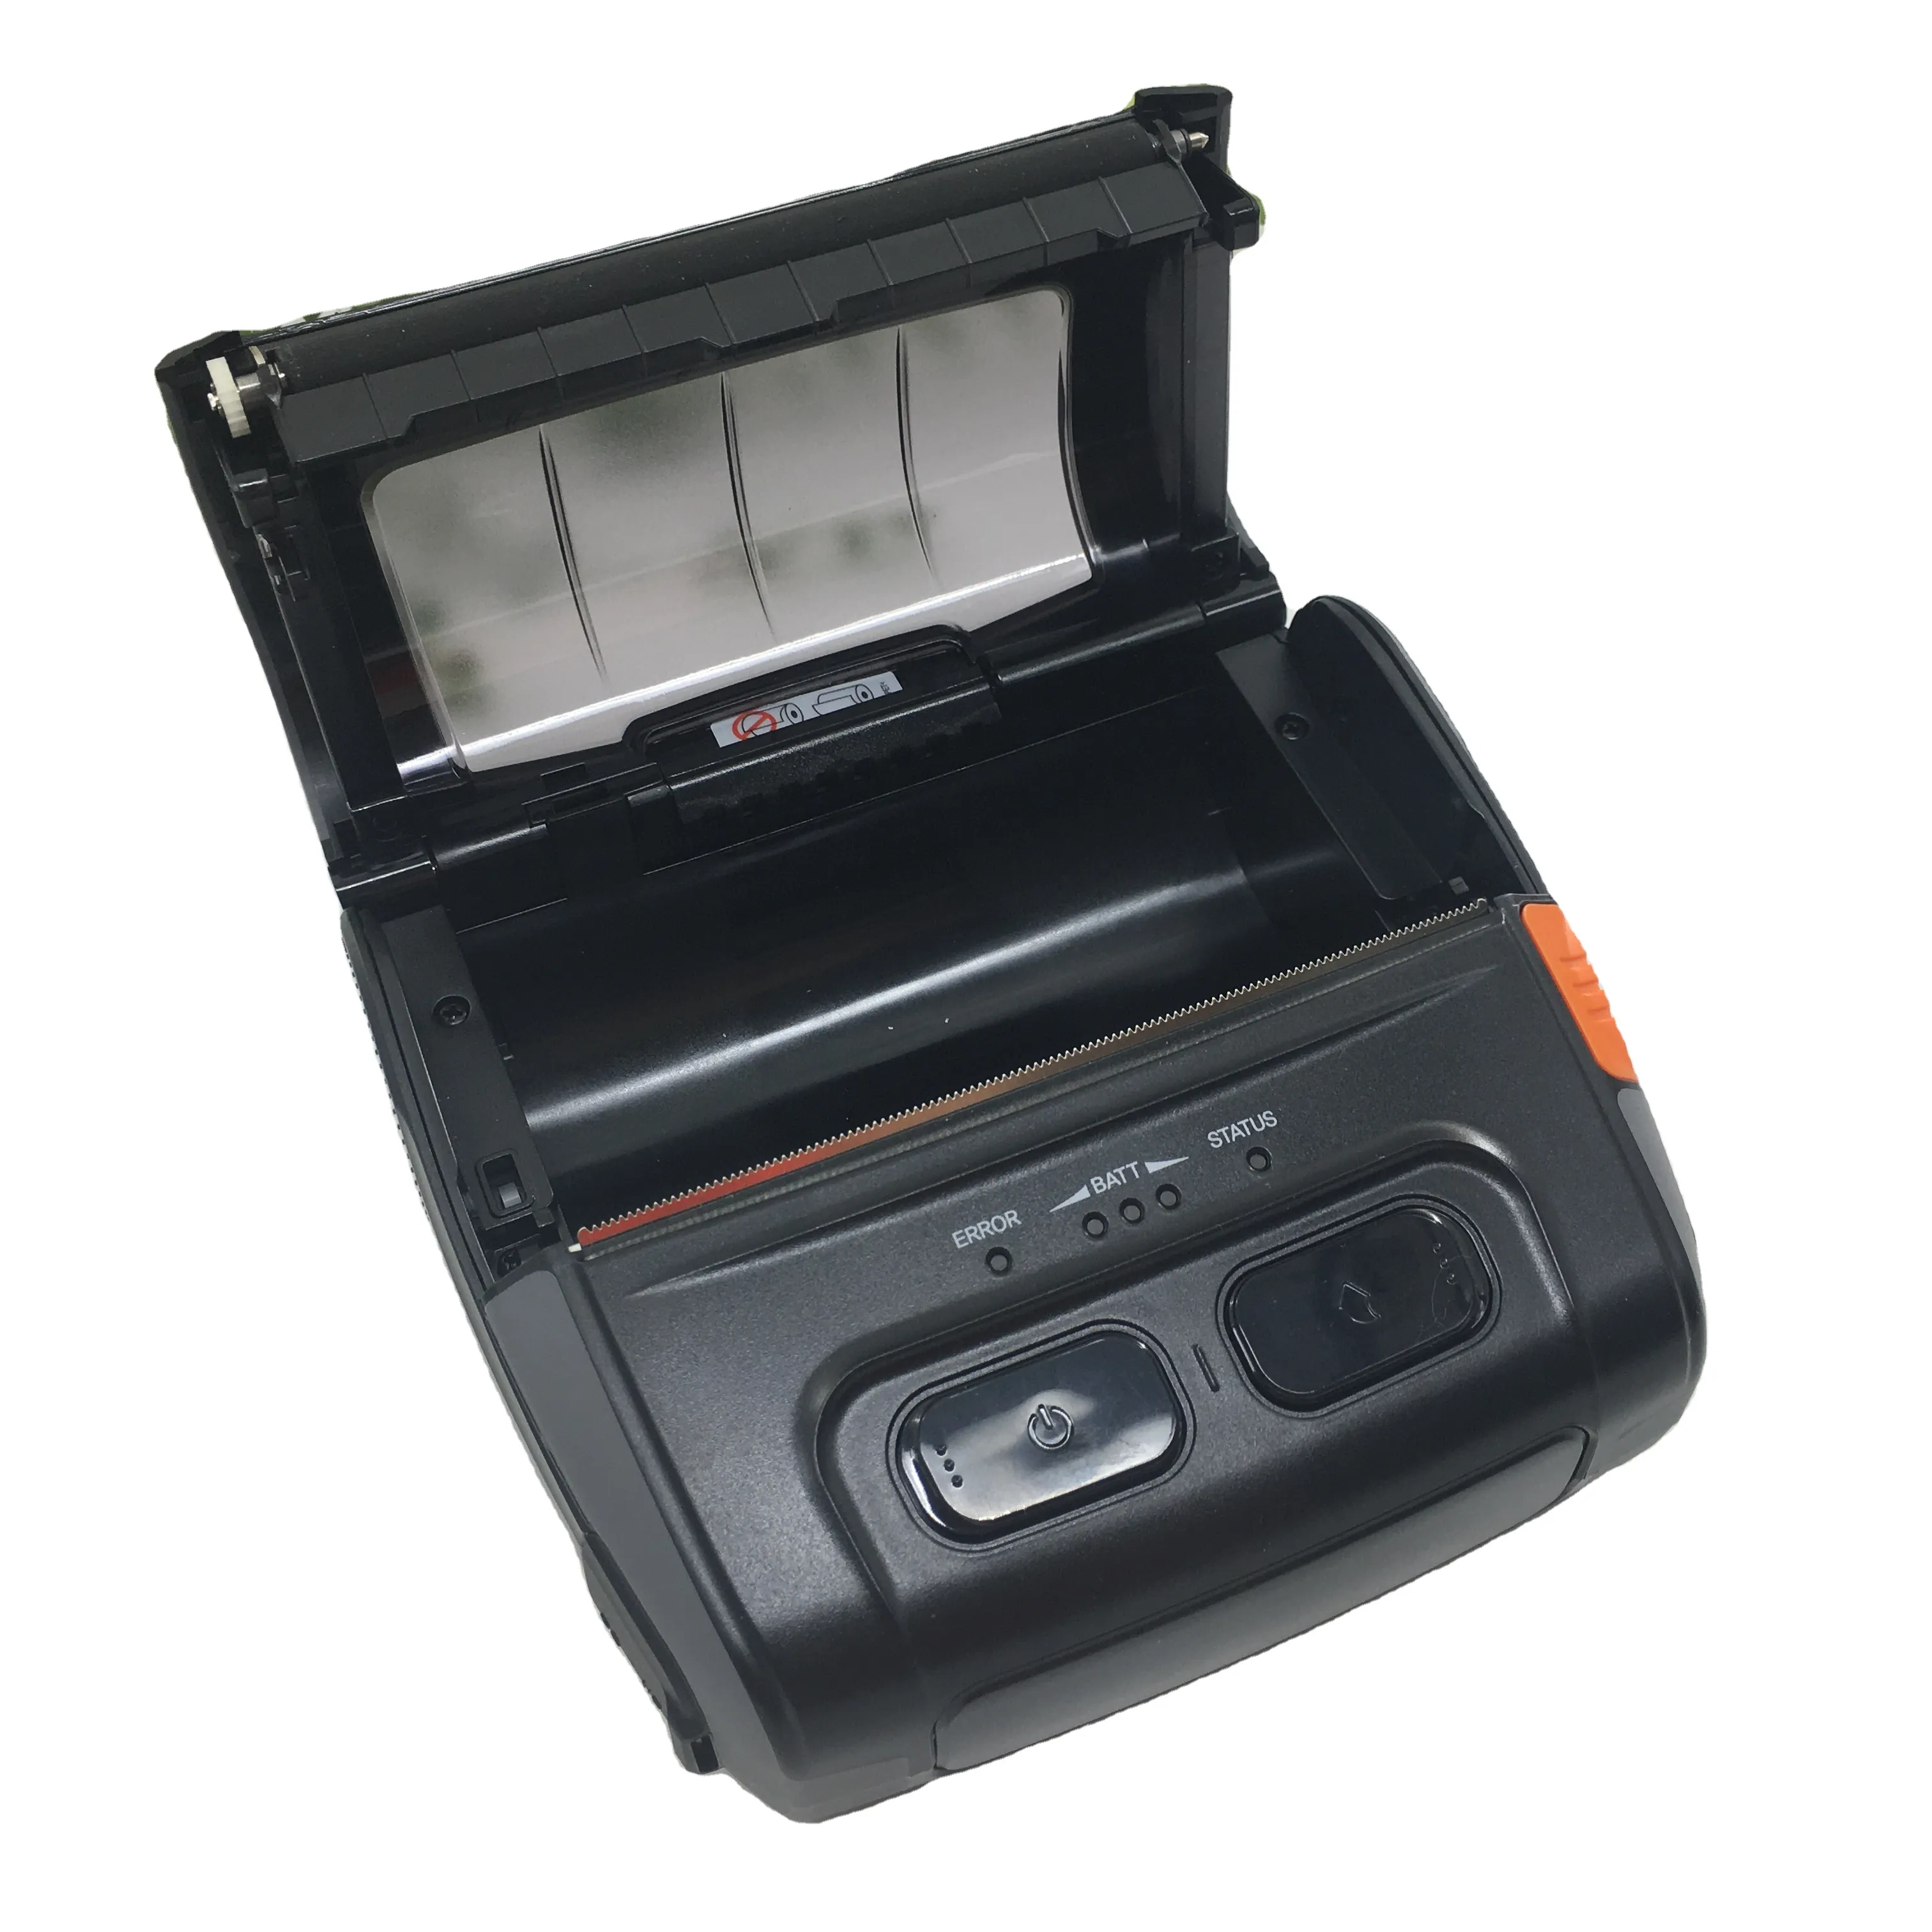 Bixolon spp-410 Портативный 4 дюйма термографические принтеры цветных ручной экшн-камера с Wi-Fi подключением зарядный кабель для передачи данных с компактный и прочный мобильный чековый принтер для печати этикеток